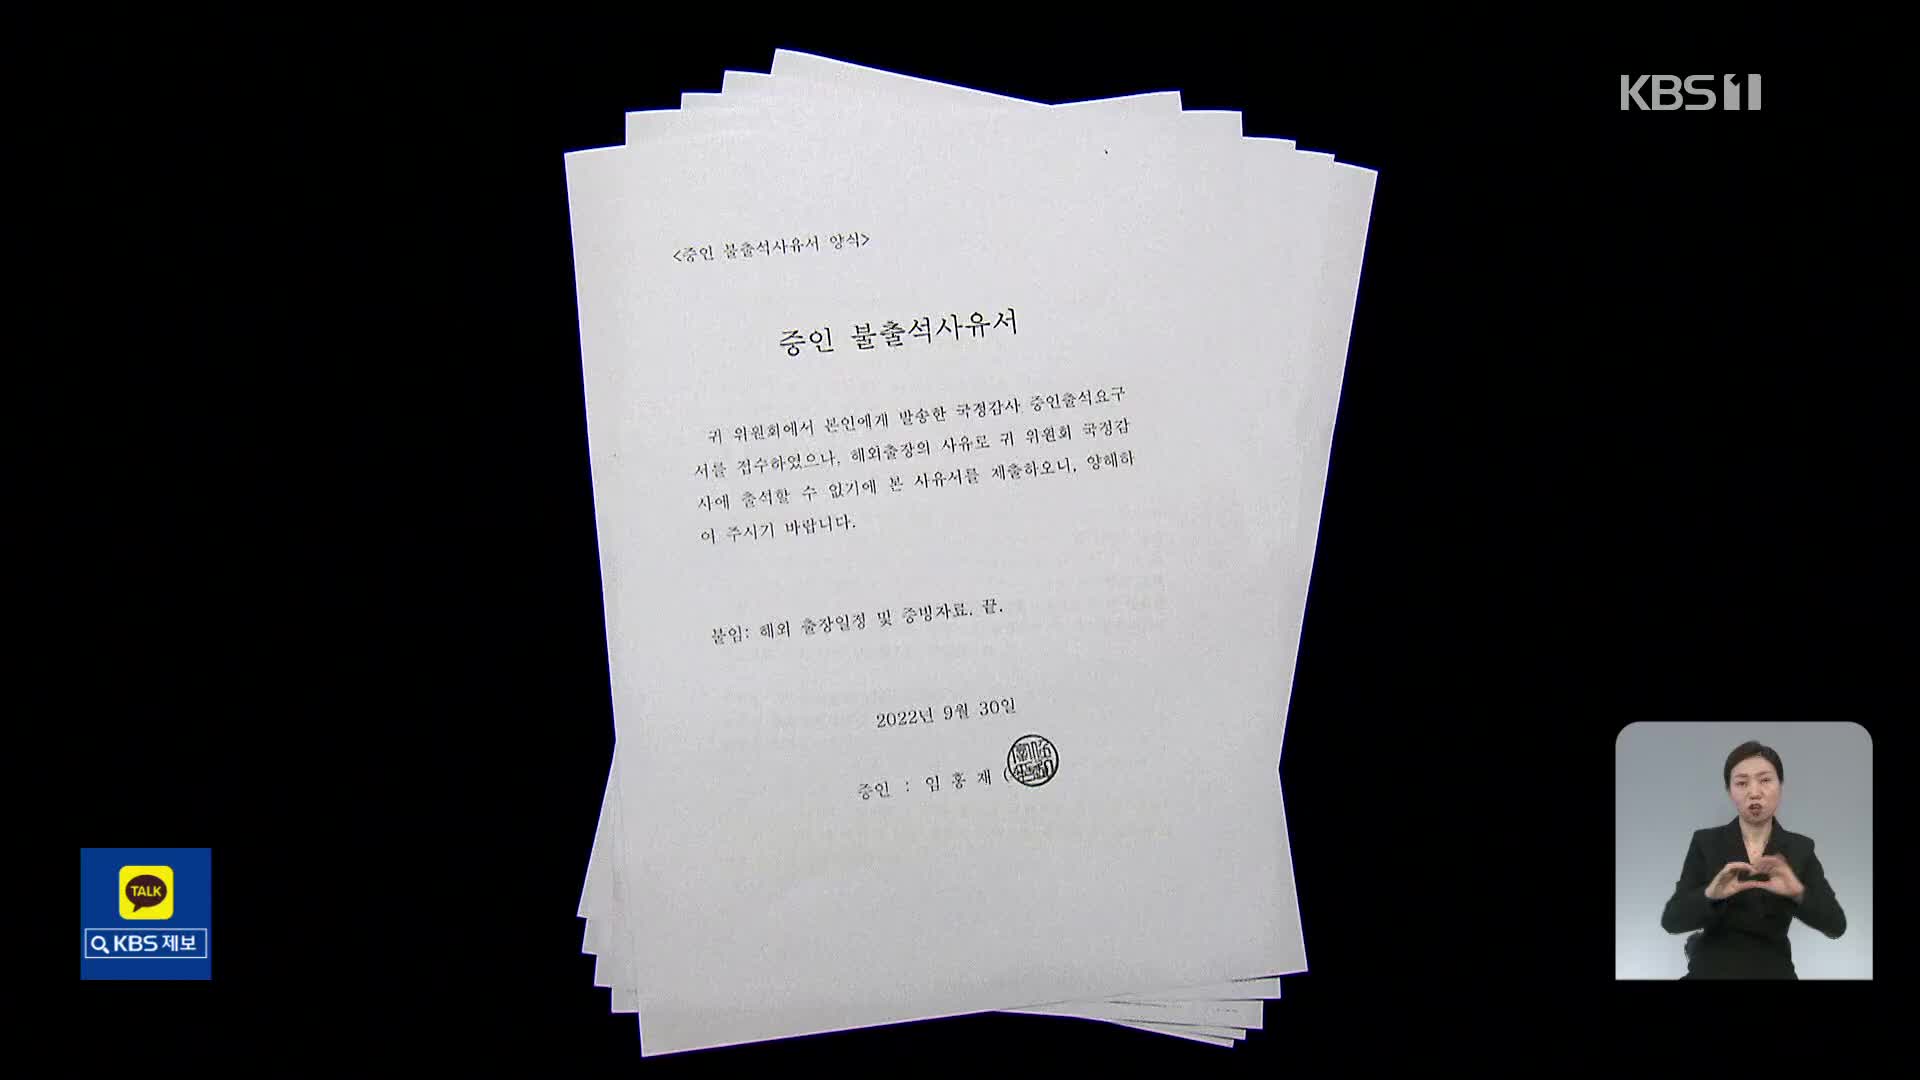 [단독] 이메일 통보로 일정 급조?… 김건희 논문 증인 ‘도피성 출장’ 논란